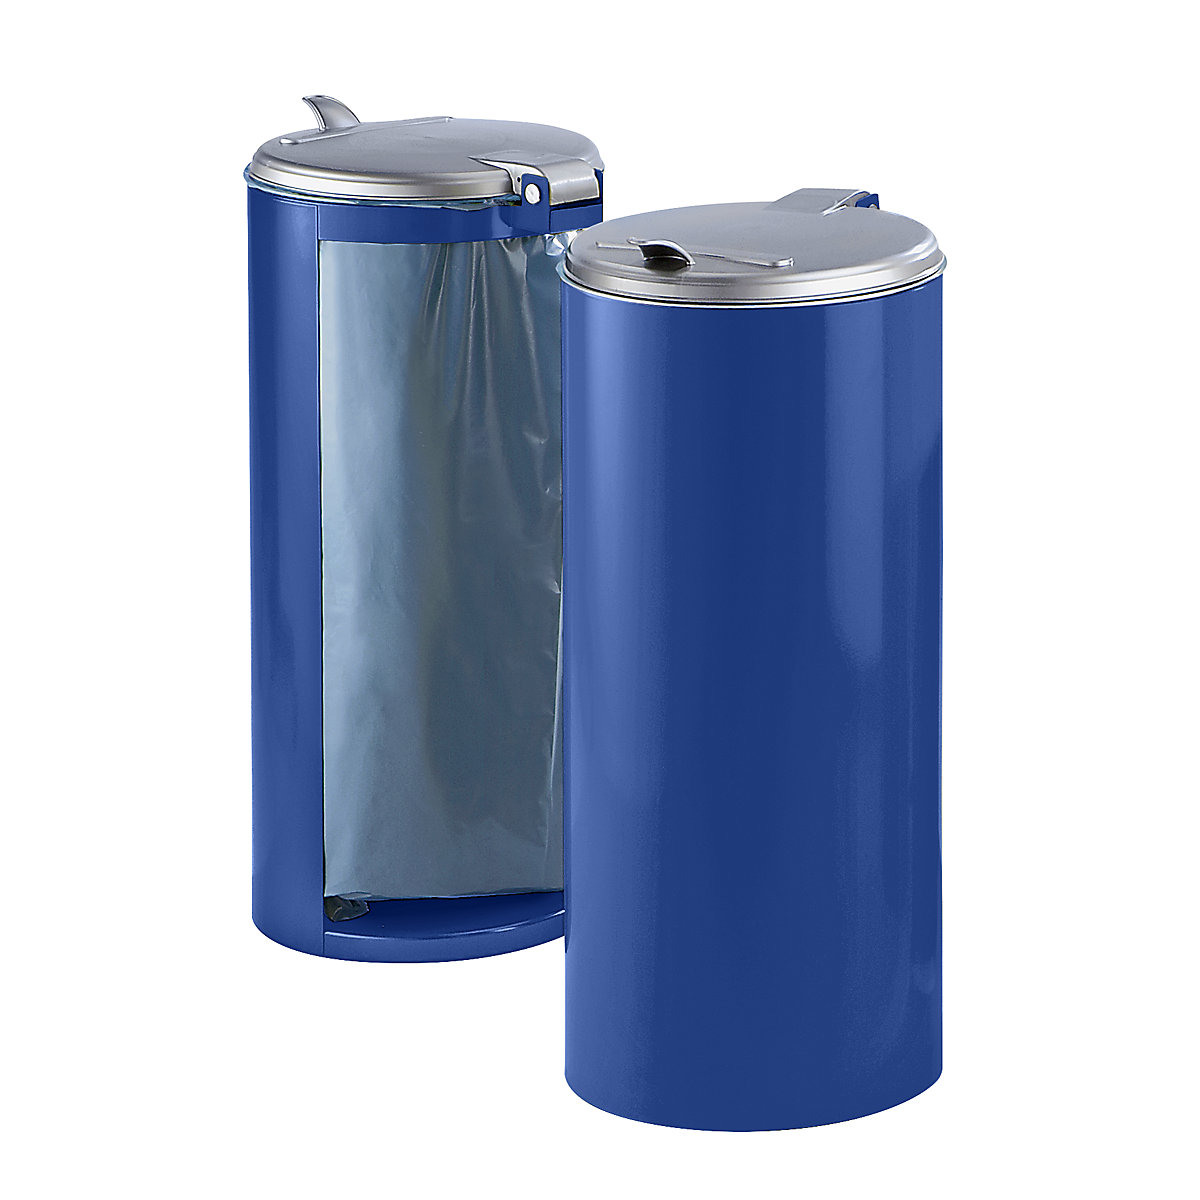 Plaatstalen afvalbak – VAR, voor inhoud 120 l, front gesloten, blauw met zilverkleurig kunststof deksel-3